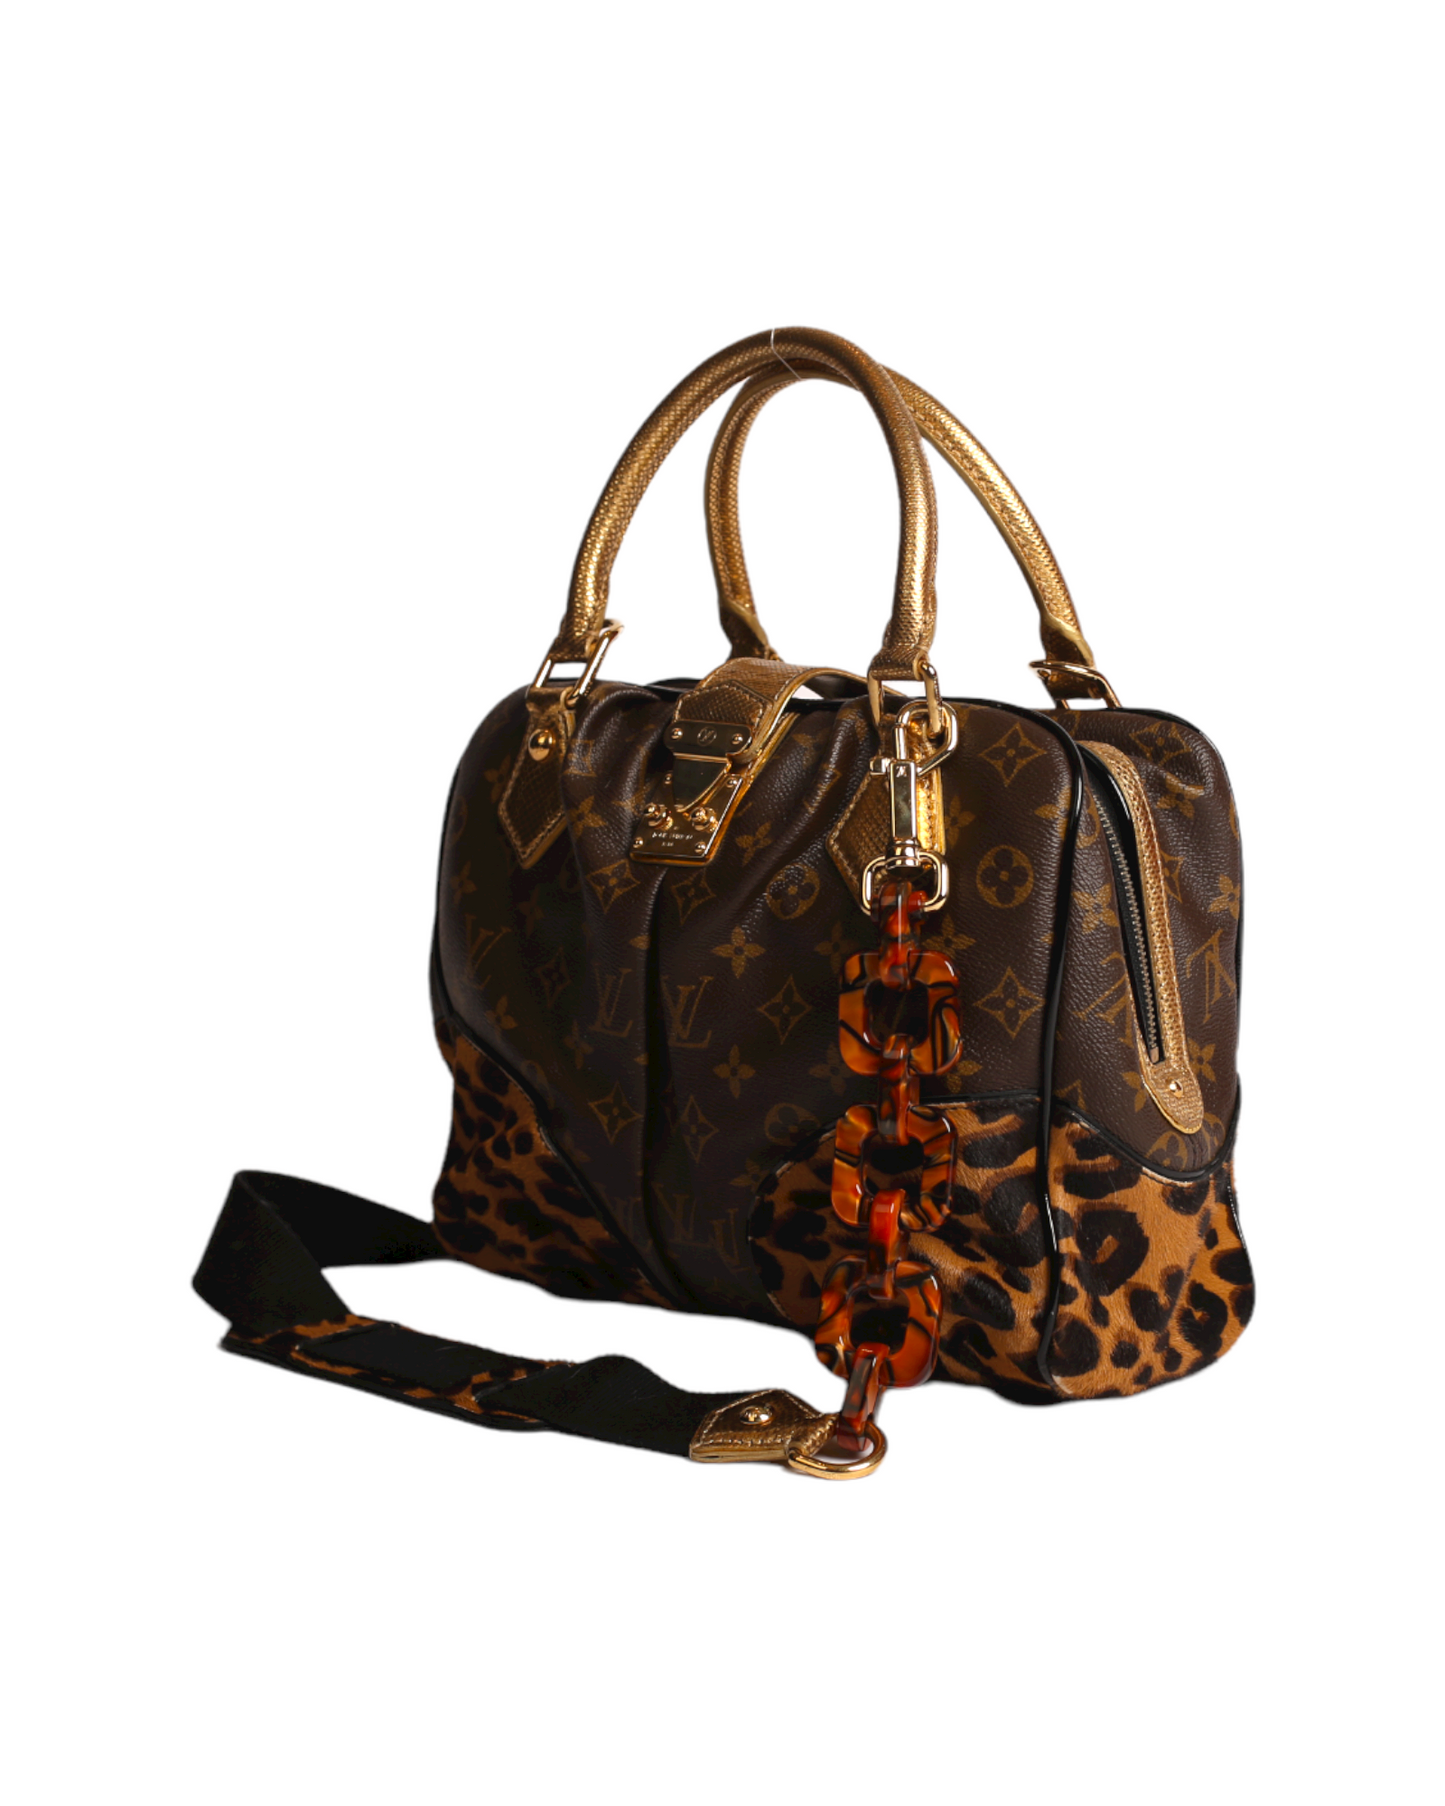 slateblue-louis-vuitton-limited-edition-monogram-leopard  Louis vuitton, Louis  vuitton clothing, Louis vuitton bag